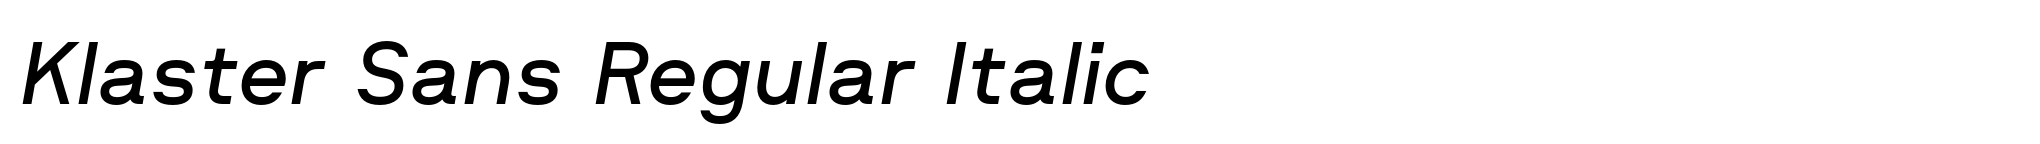 Klaster Sans Regular Italic image